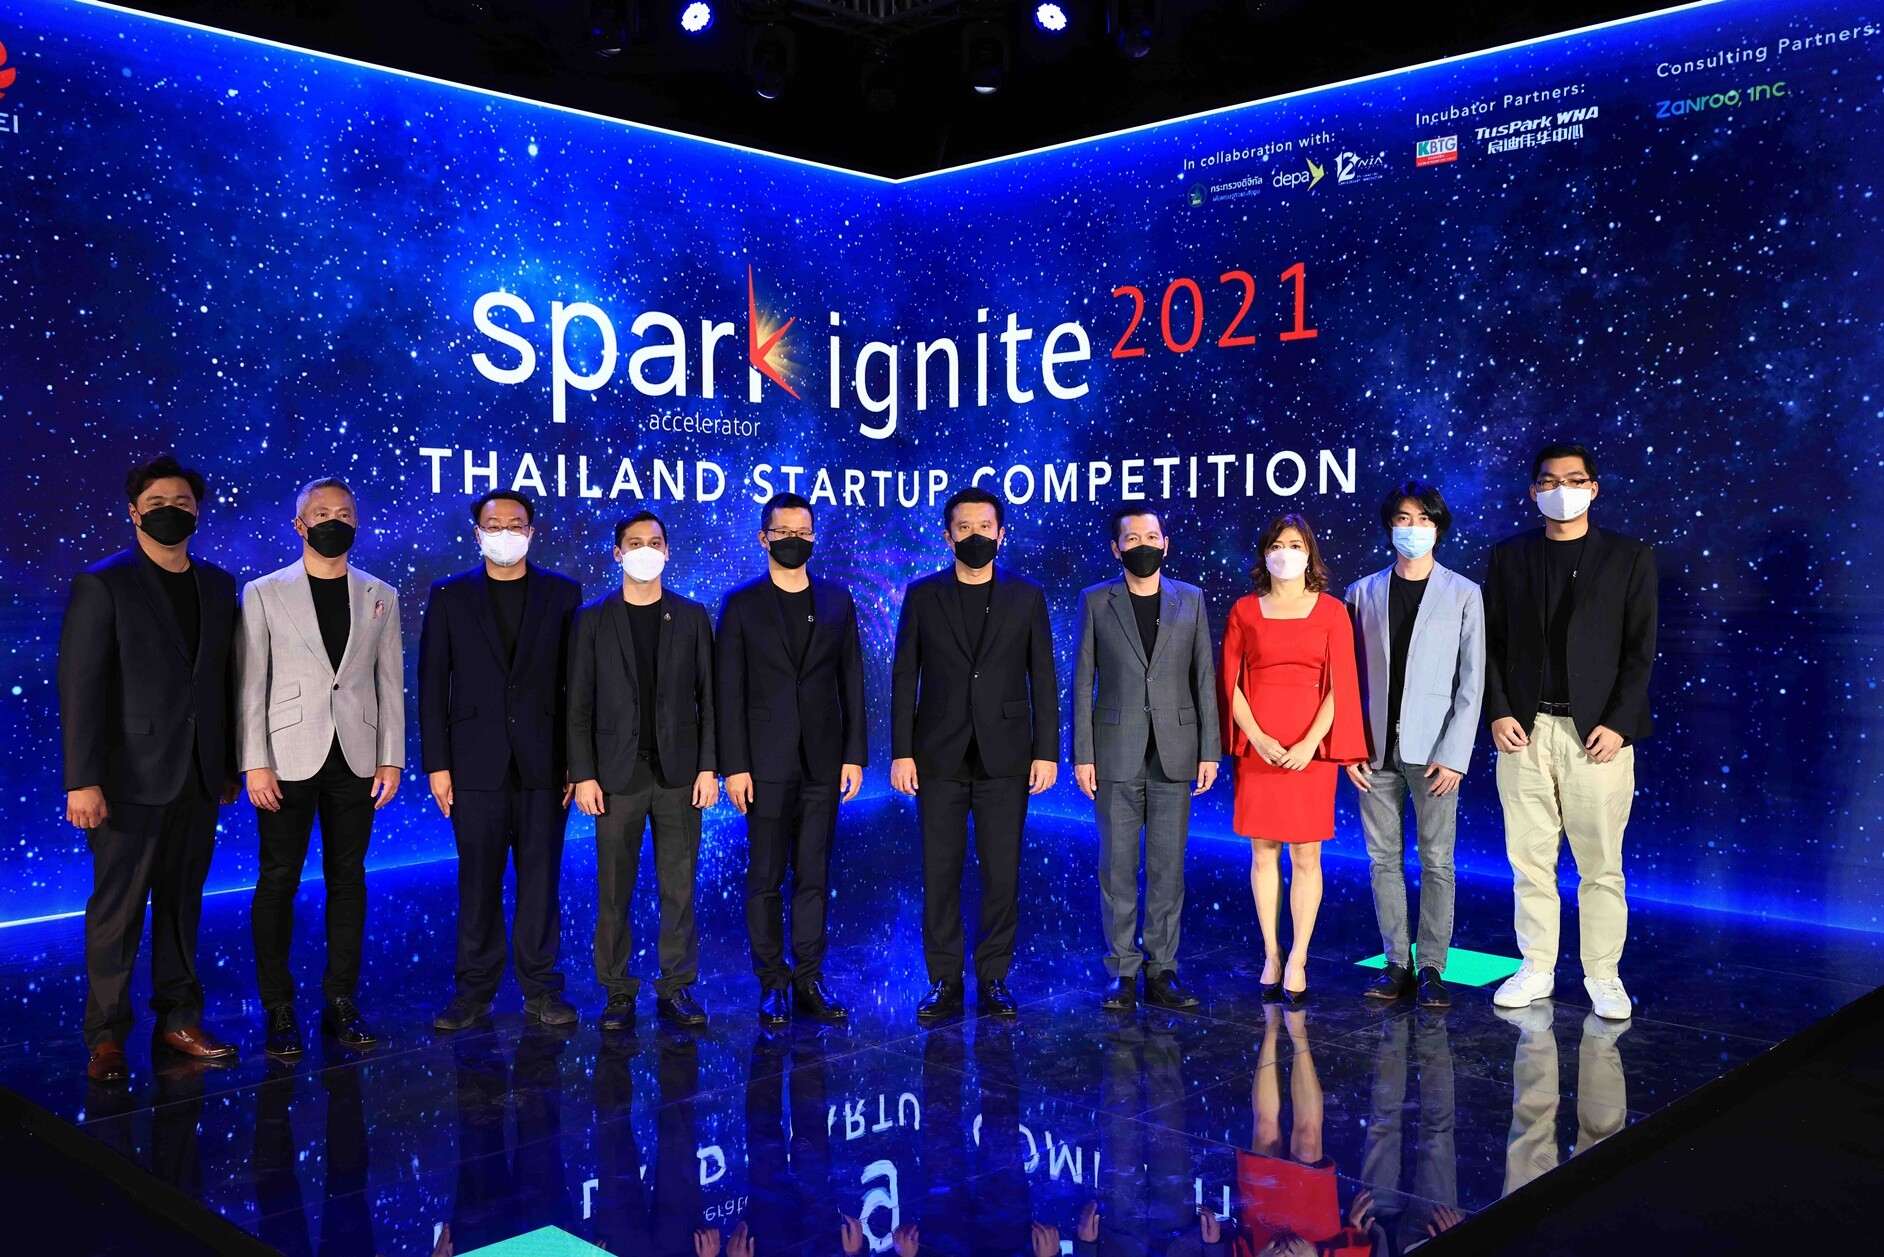 หัวเว่ย ประกาศรายชื่อสตาร์ทอัพผู้ชนะจากงาน "Spark Ignite 2021 - Thailand Start up Competition"